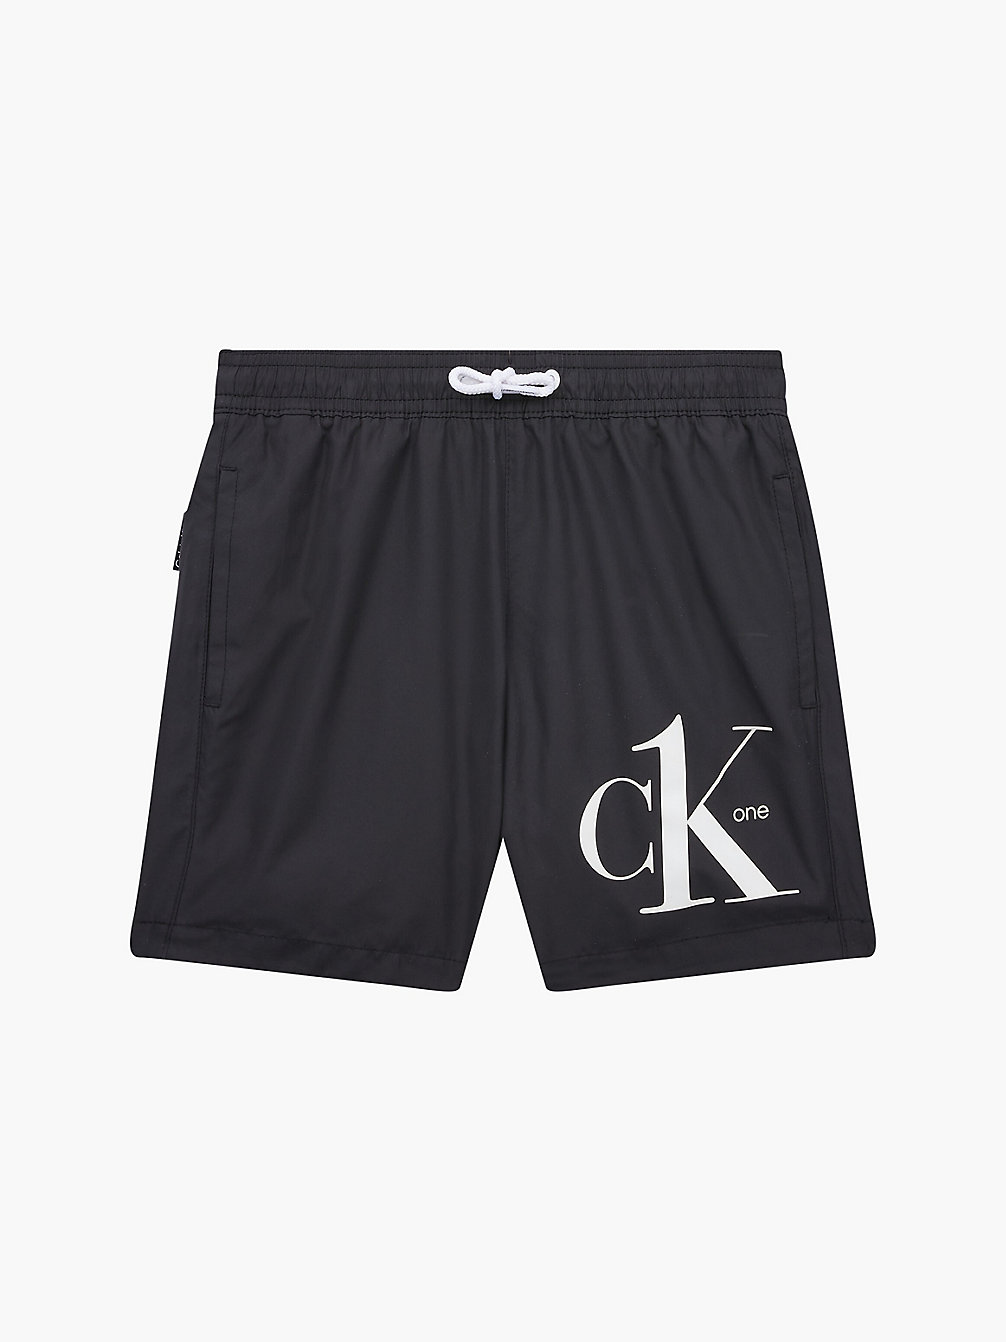 PVH BLACK Badeshorts Für Jungen - CK One undefined Jungen Calvin Klein